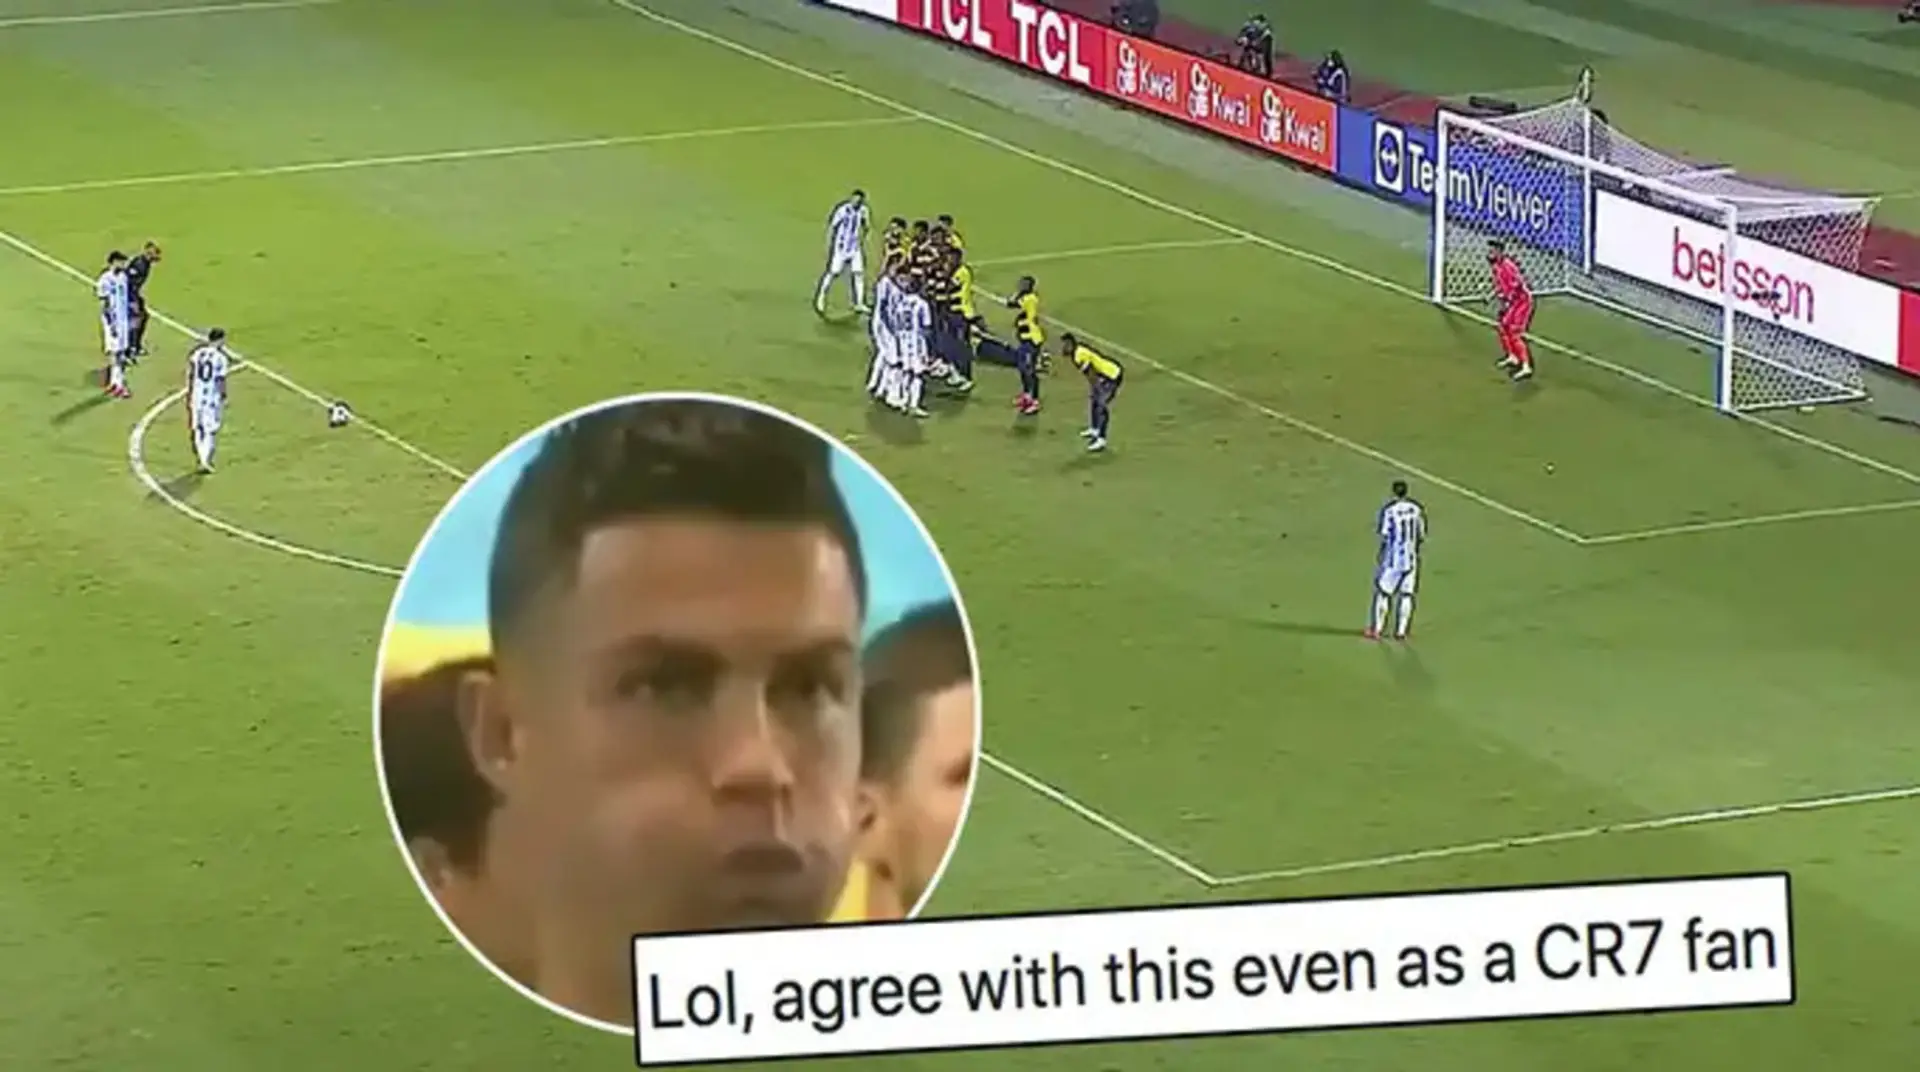 'Imagínese si Messi tuviera la habilidad de tiro libre de Ronaldo': fan muestra cómo Cristiano realizaría ESE tiro libre de Leo vs Ecuador